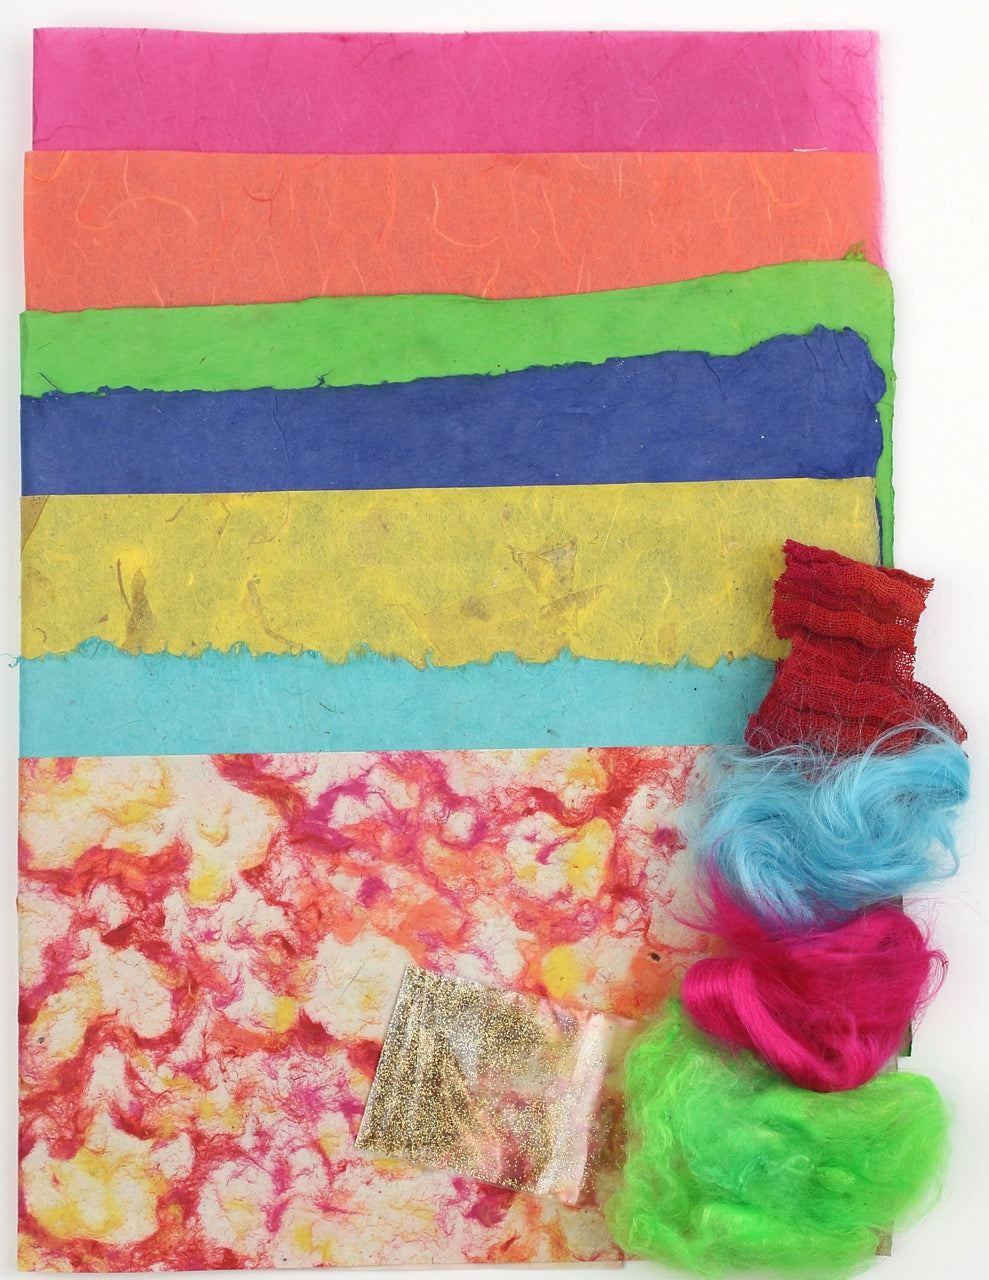 Fabric Paper Kit - 'Ornamentics'